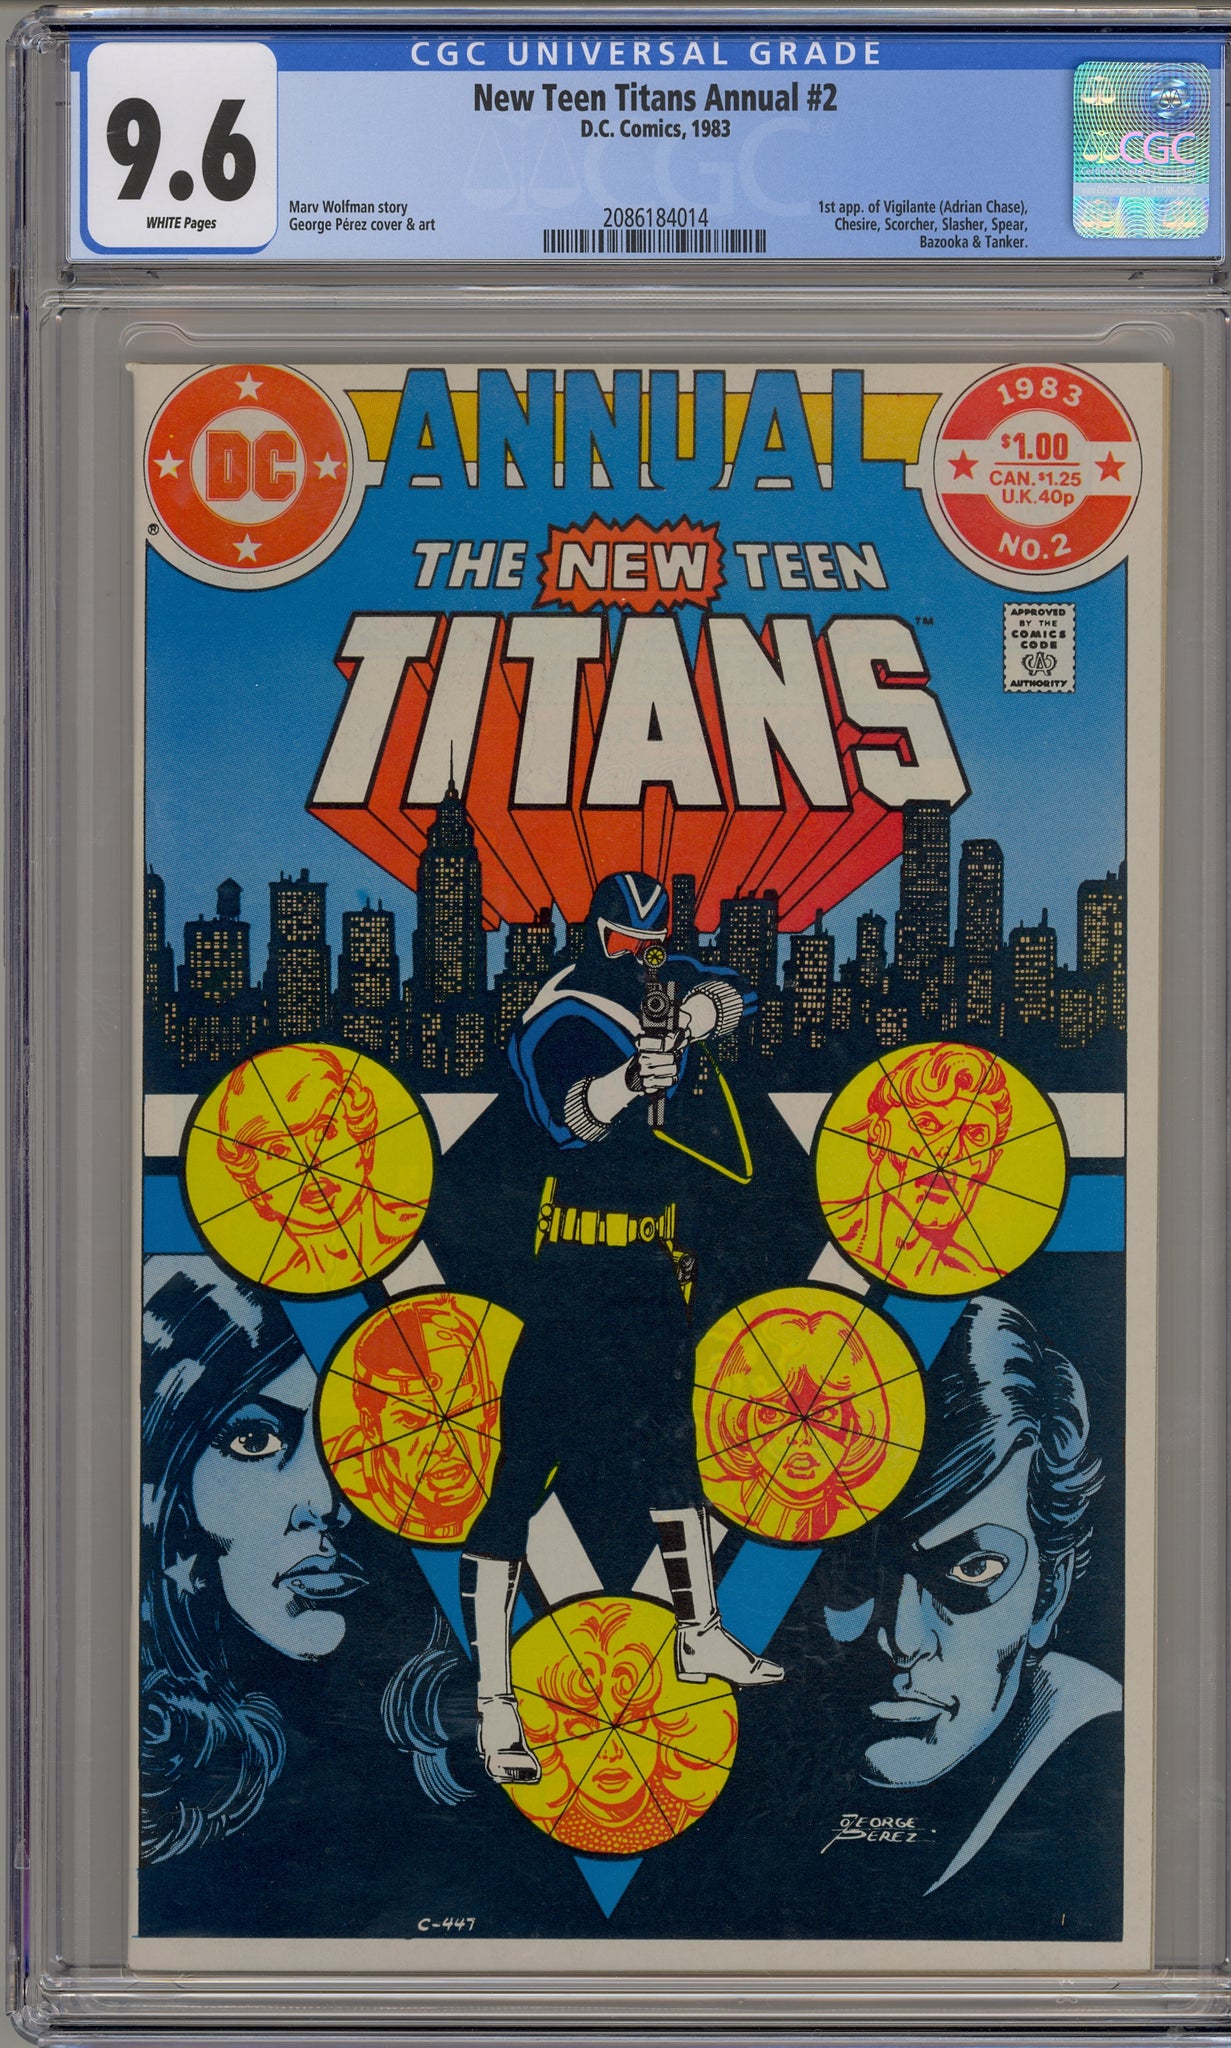 New Teen Titans Annual #2 (1983) Vigilante